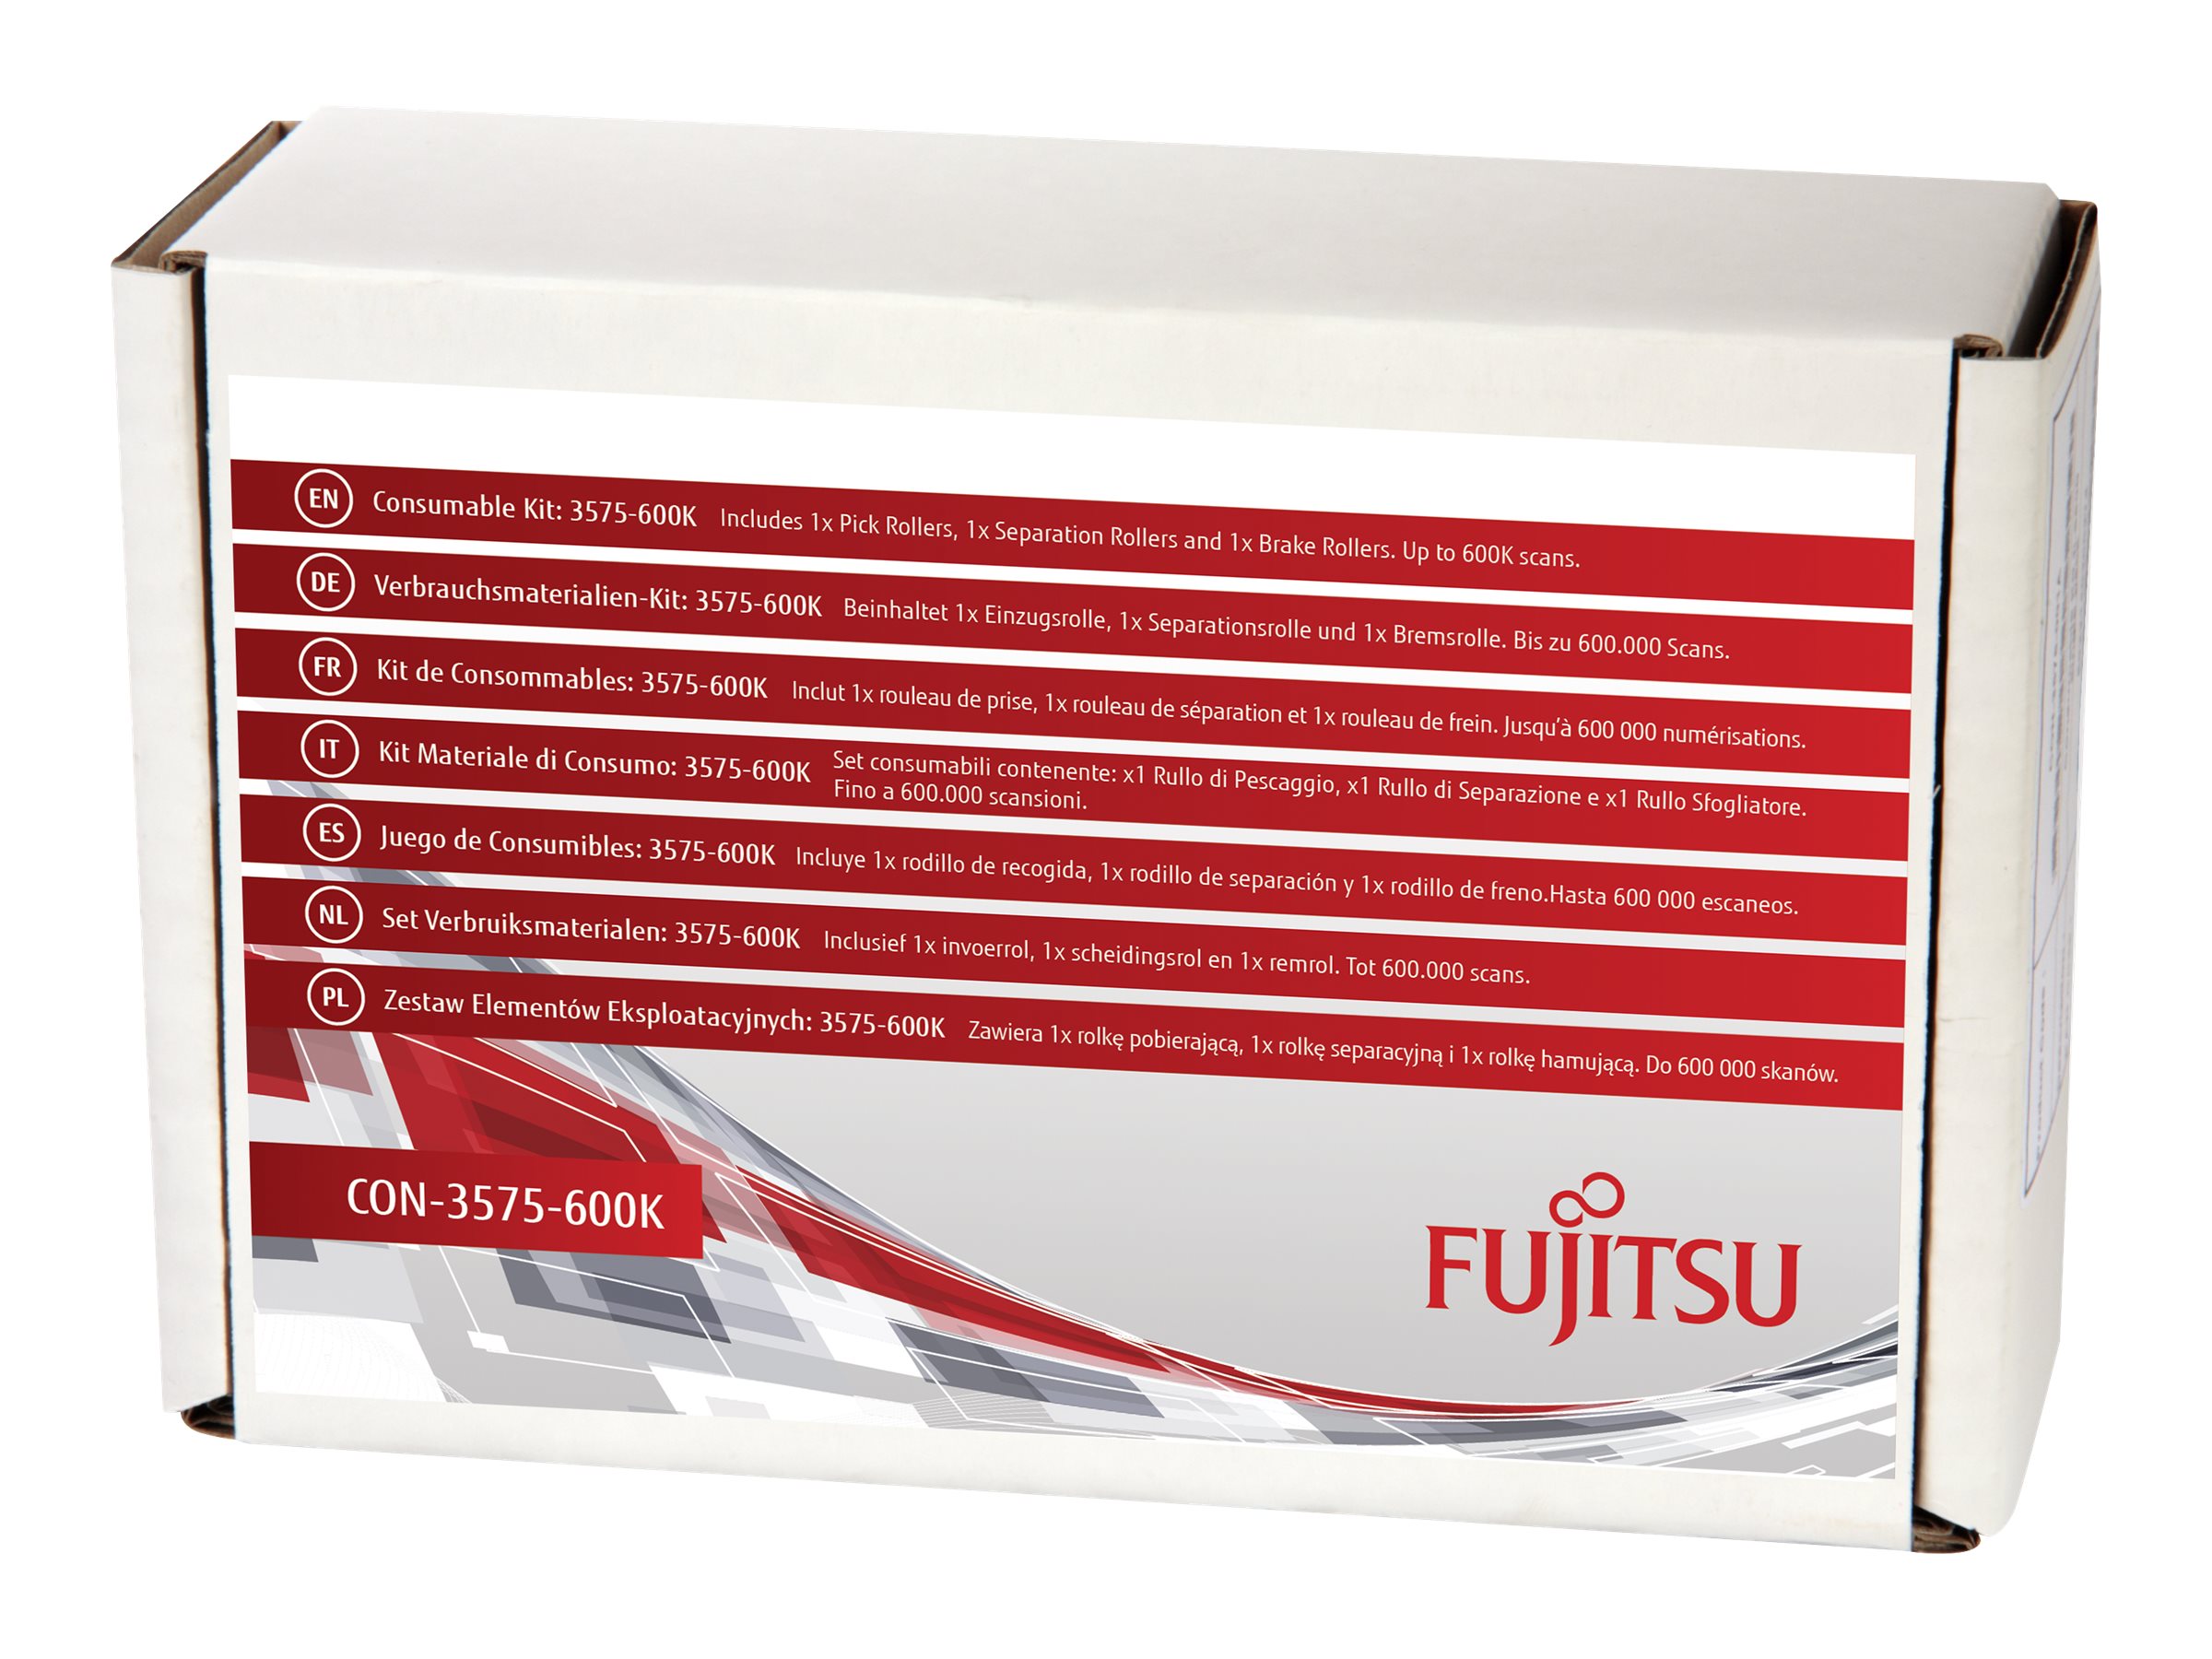 Fujitsu Consumable Kit: 3575-600K - Kit de consommables pour scanner - pour fi-6400, 6800 - CON-3575-600K - Accessoires pour scanner